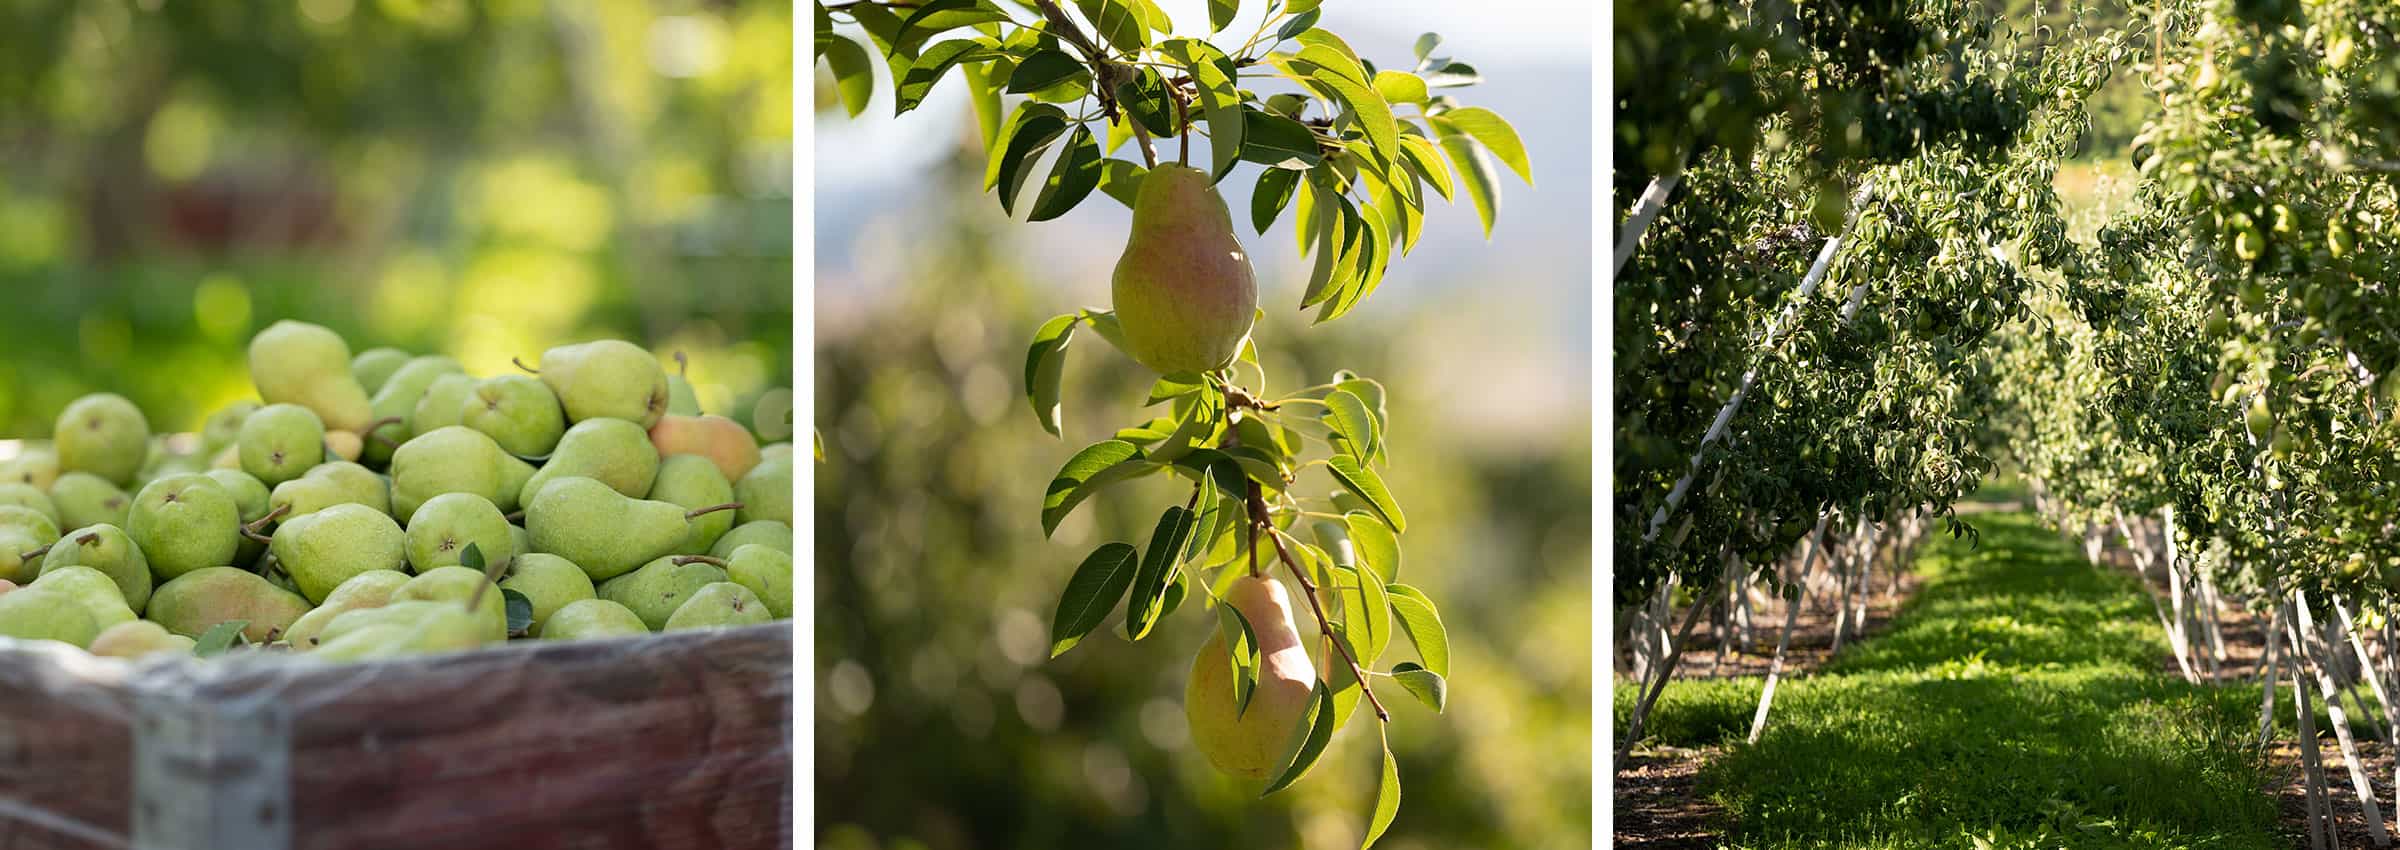 Rainier Pear Gallery - Rainier Fruit